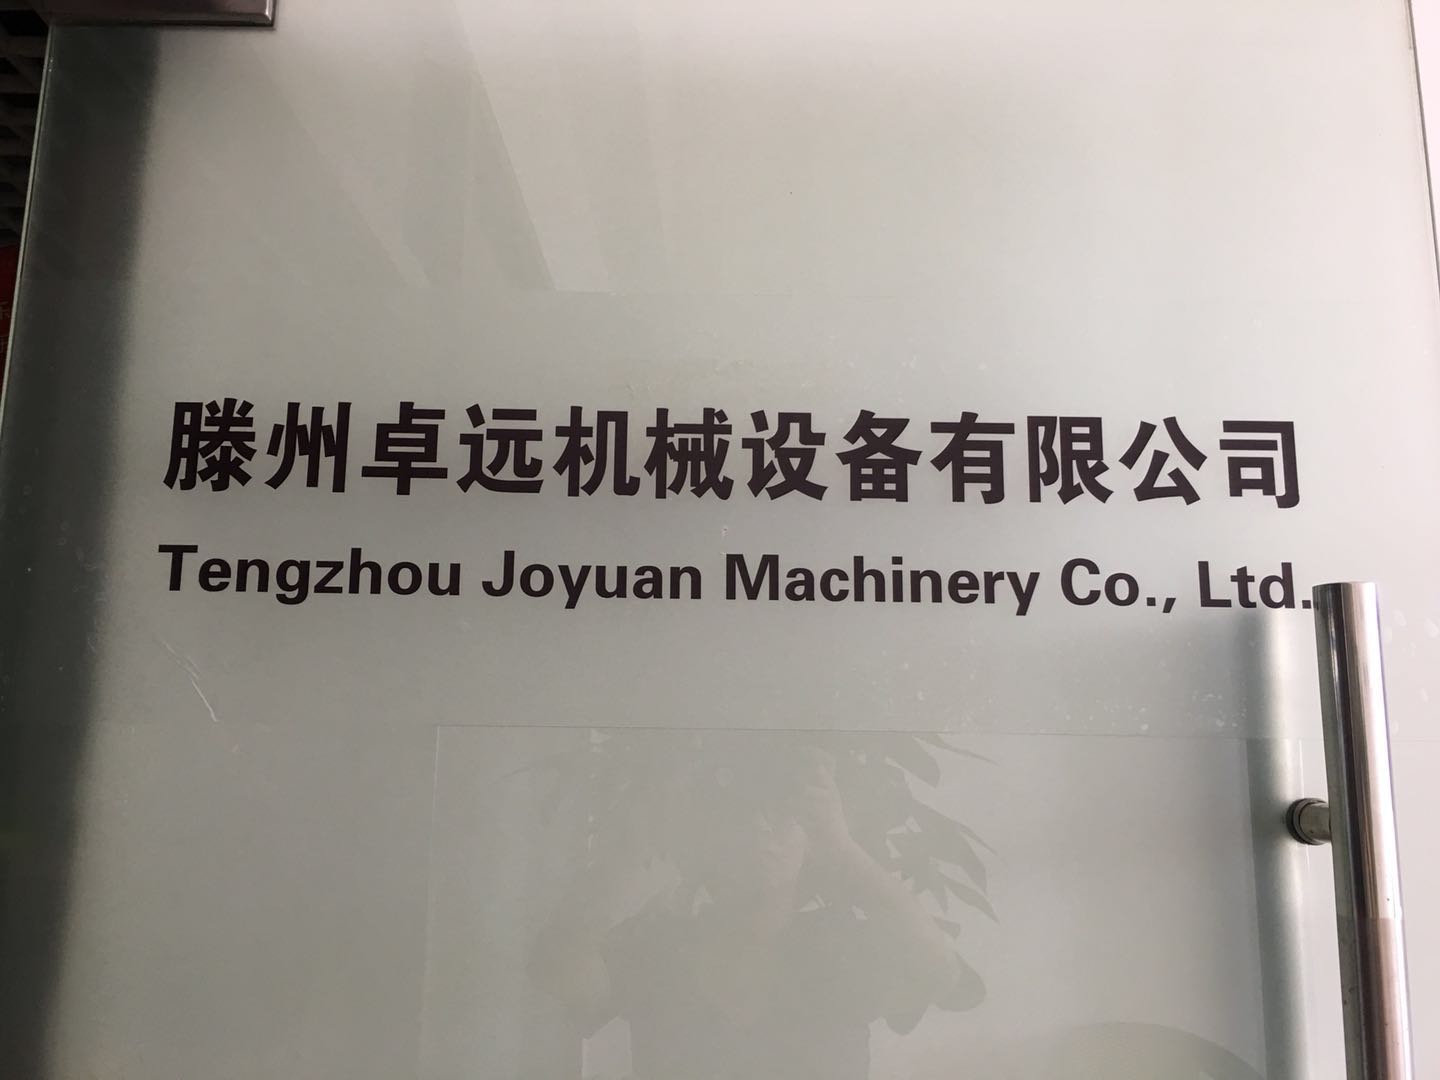 Tengzhou Joyuan Machinery Co., Ltd.